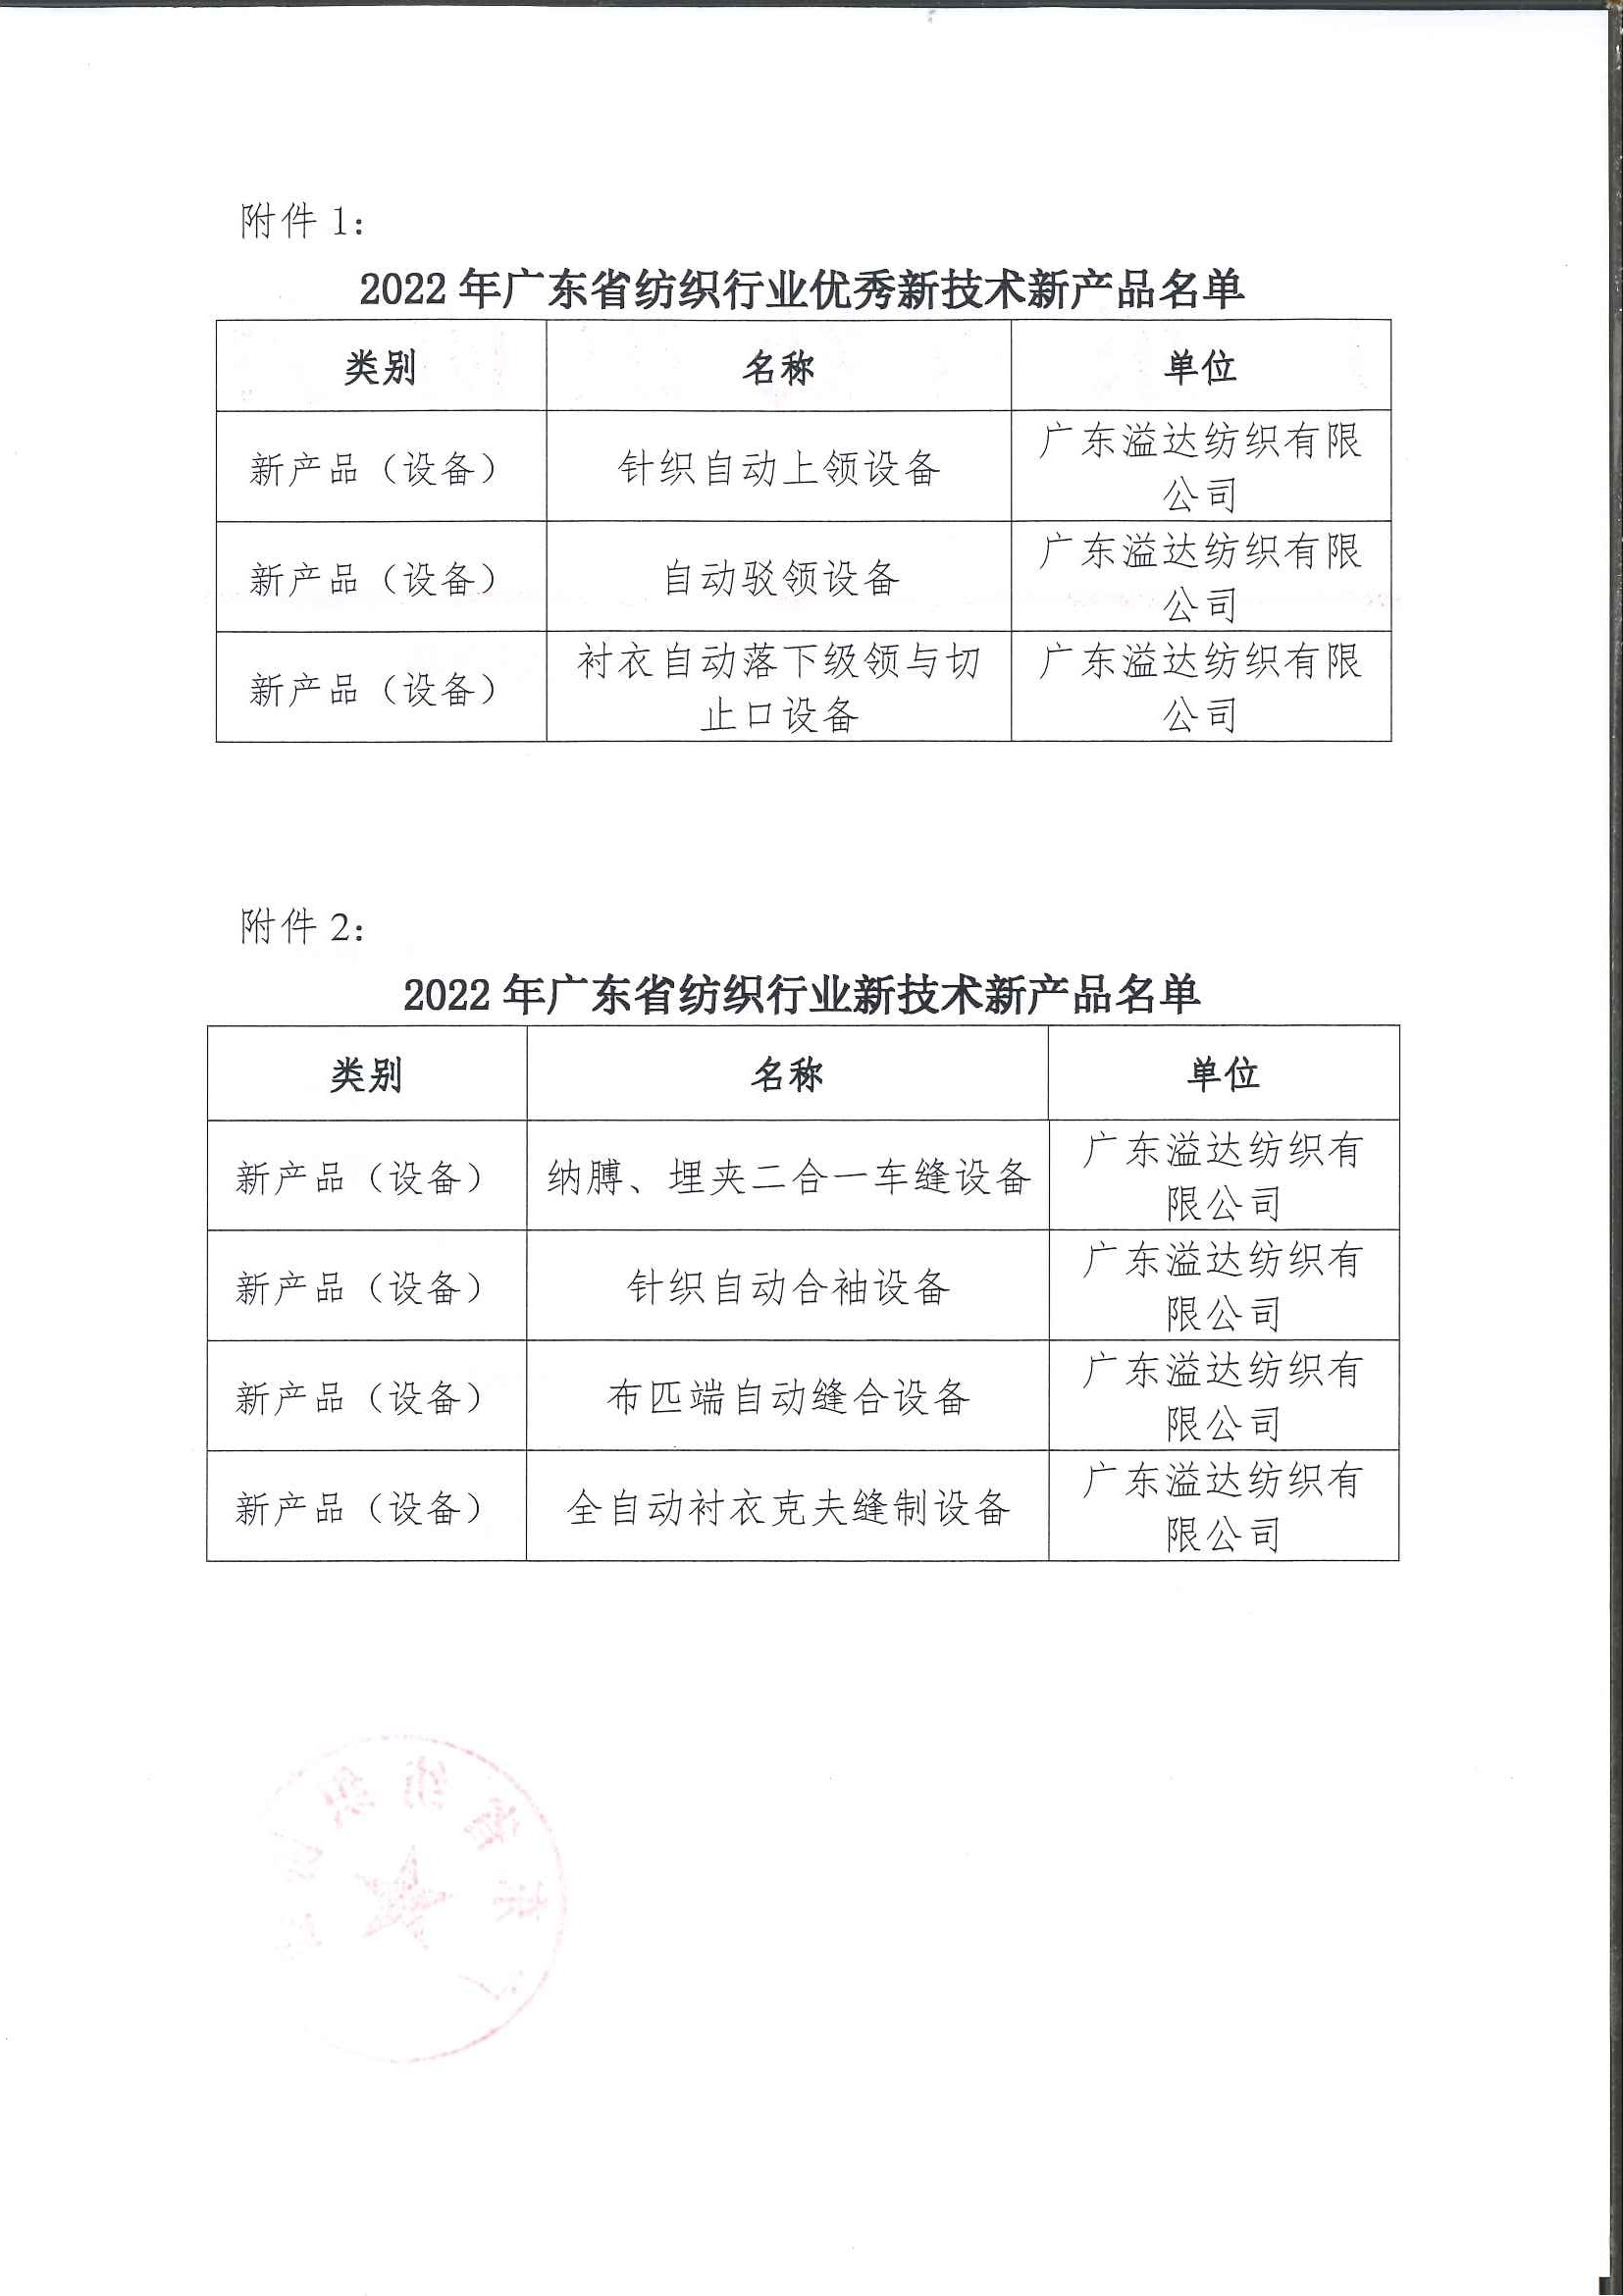 2022年广东省纺织行业新技术新产品认定名单公示_页面_2.jpg